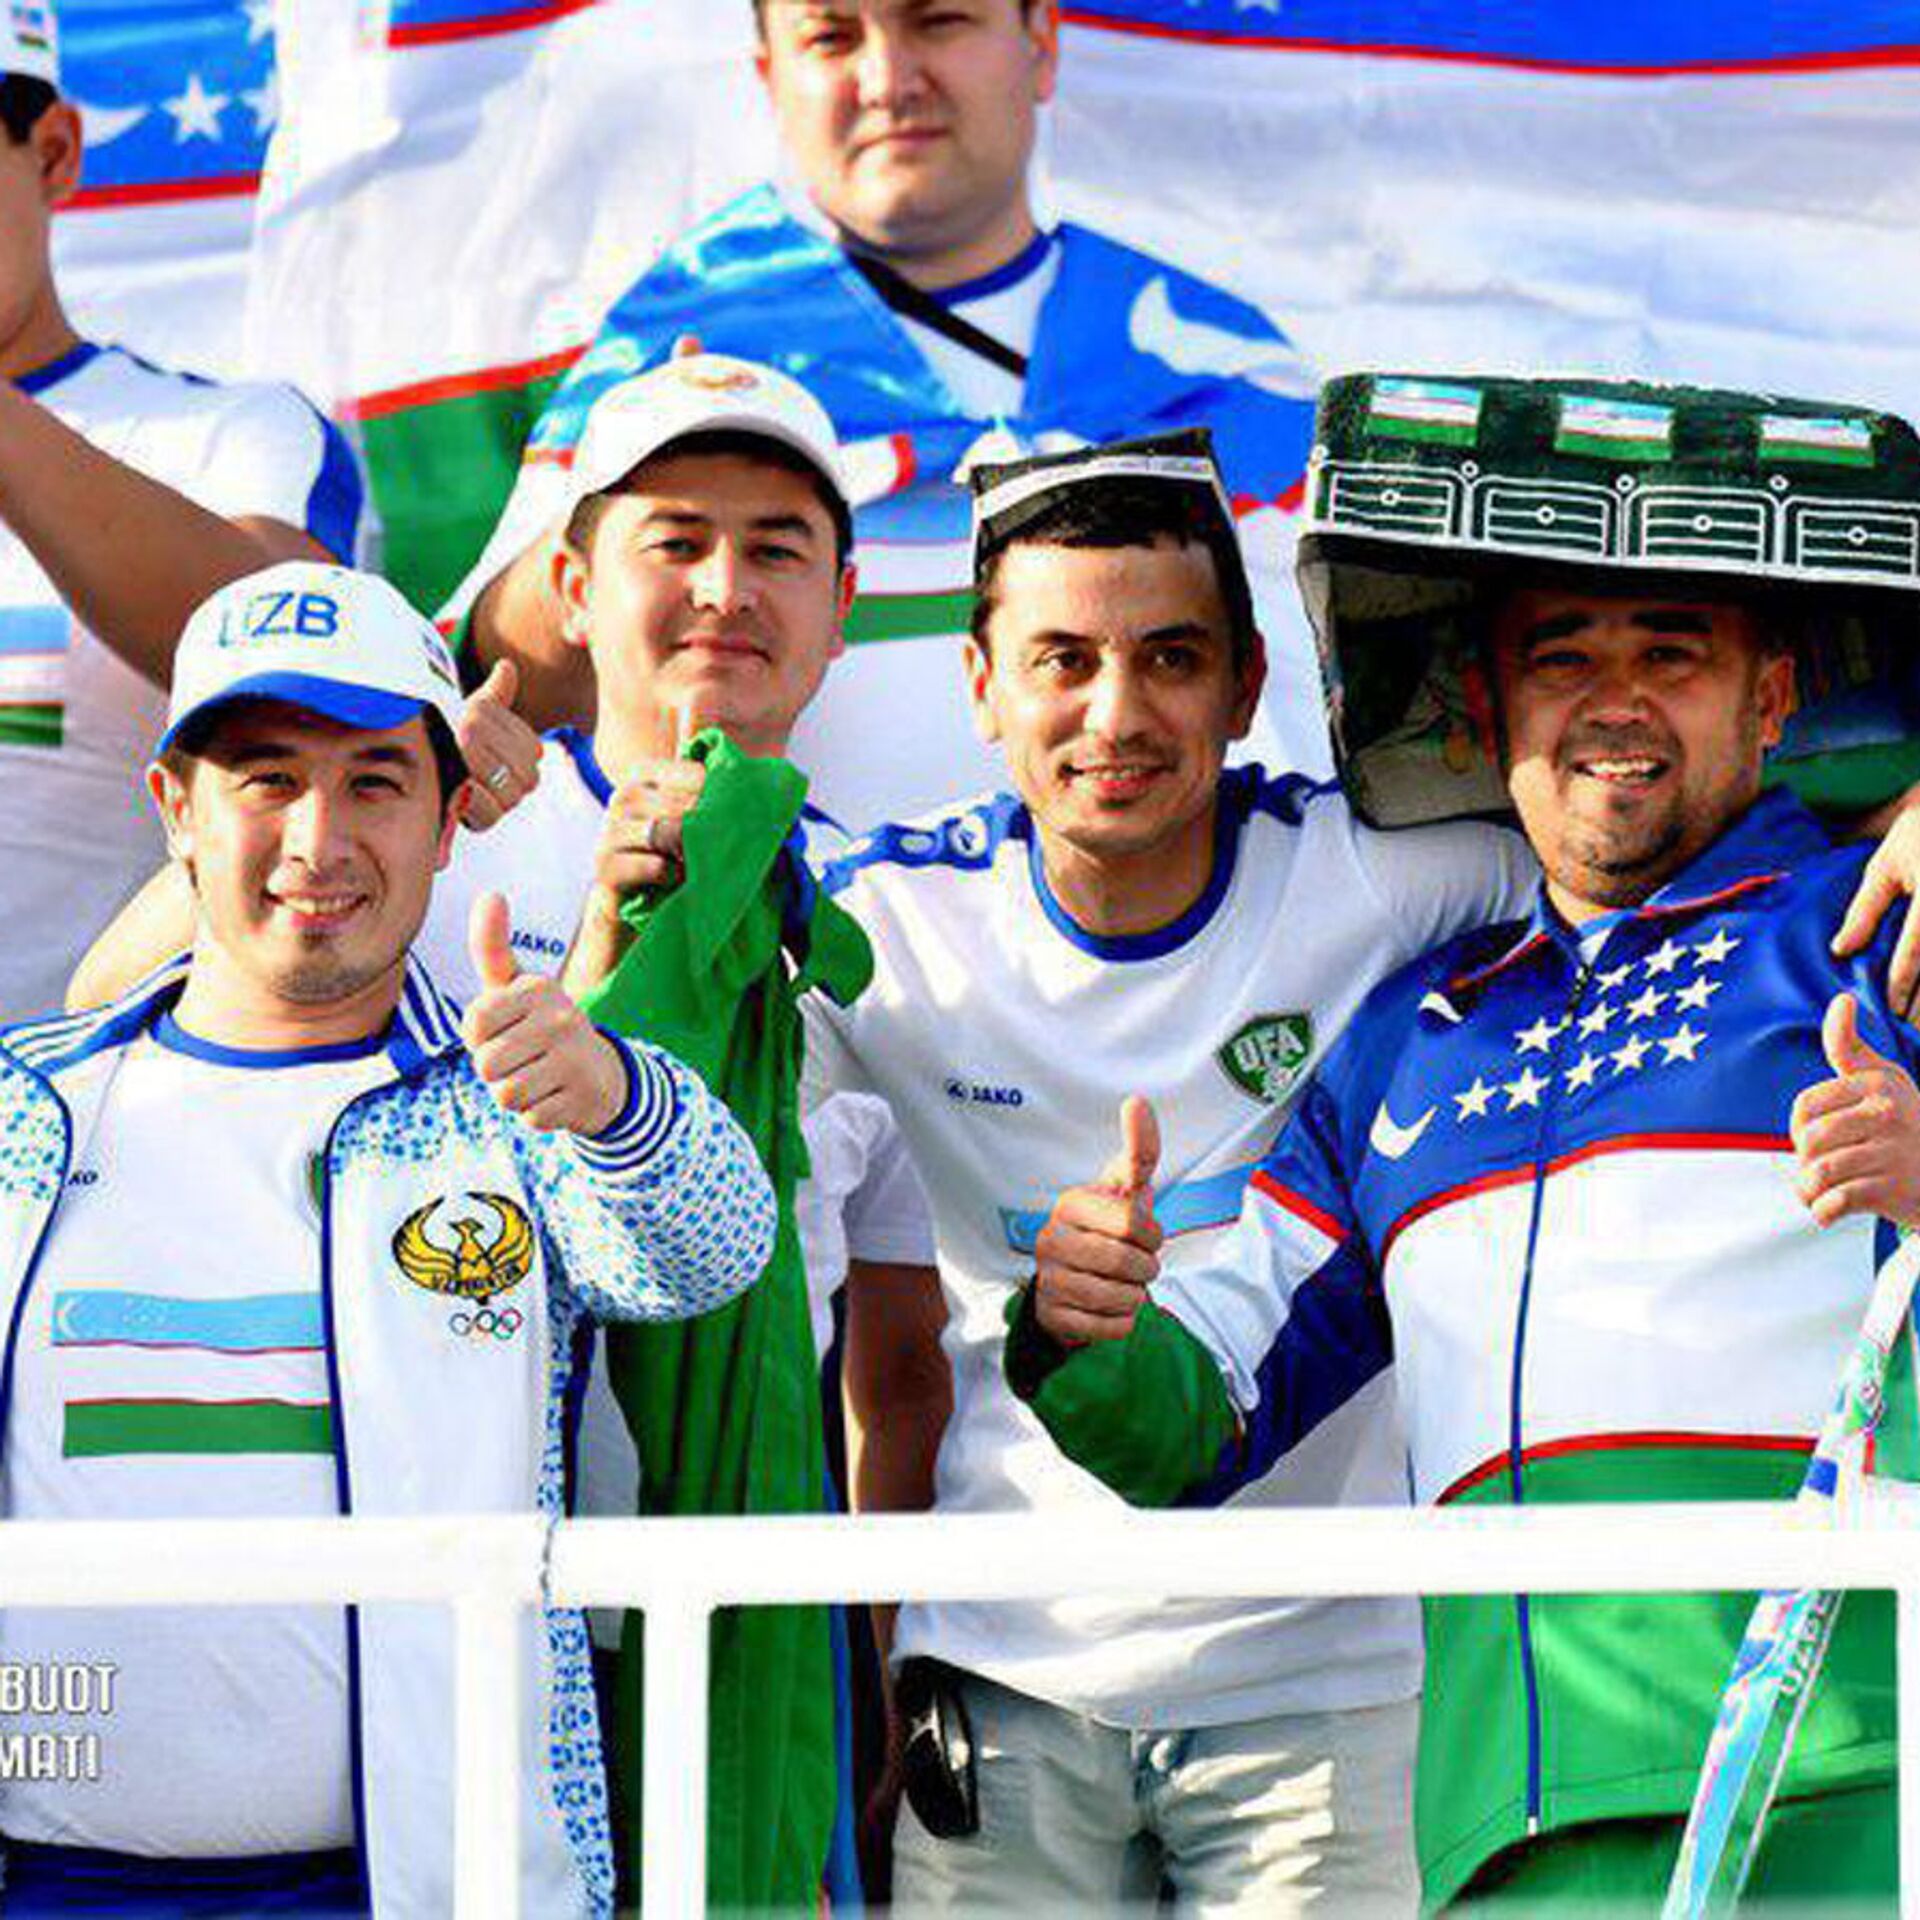 Впереди нас ехали спортсмены. Узбекские болельщики. Футбол болельщики Узбекистан. Фанат в узбекские. Узбекистанские фанаты.